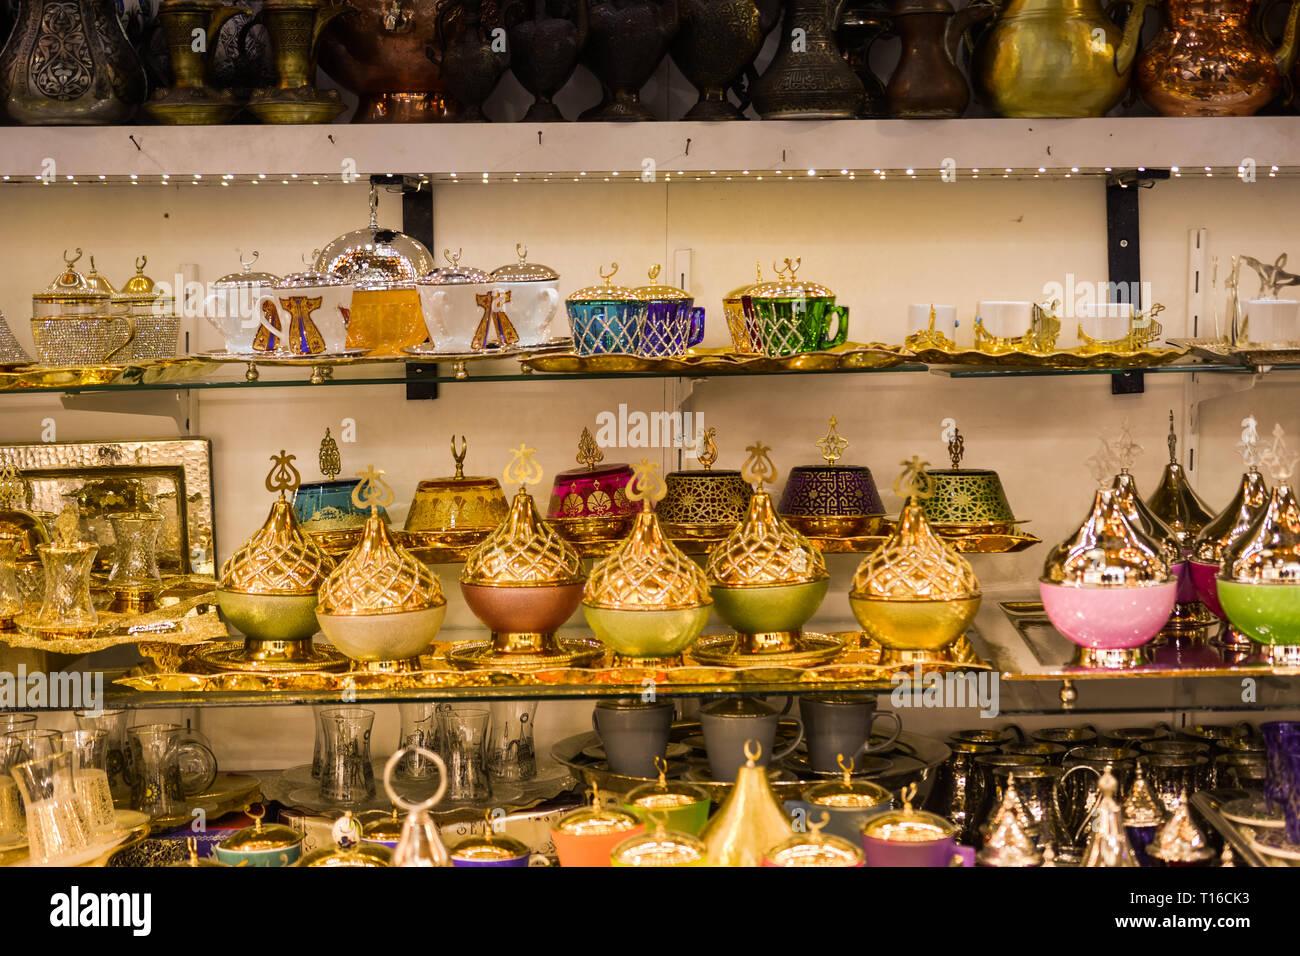 Bunte im osmanischen Stil, Schalen, Töpfe und Objekte auf dem Display Stockfoto